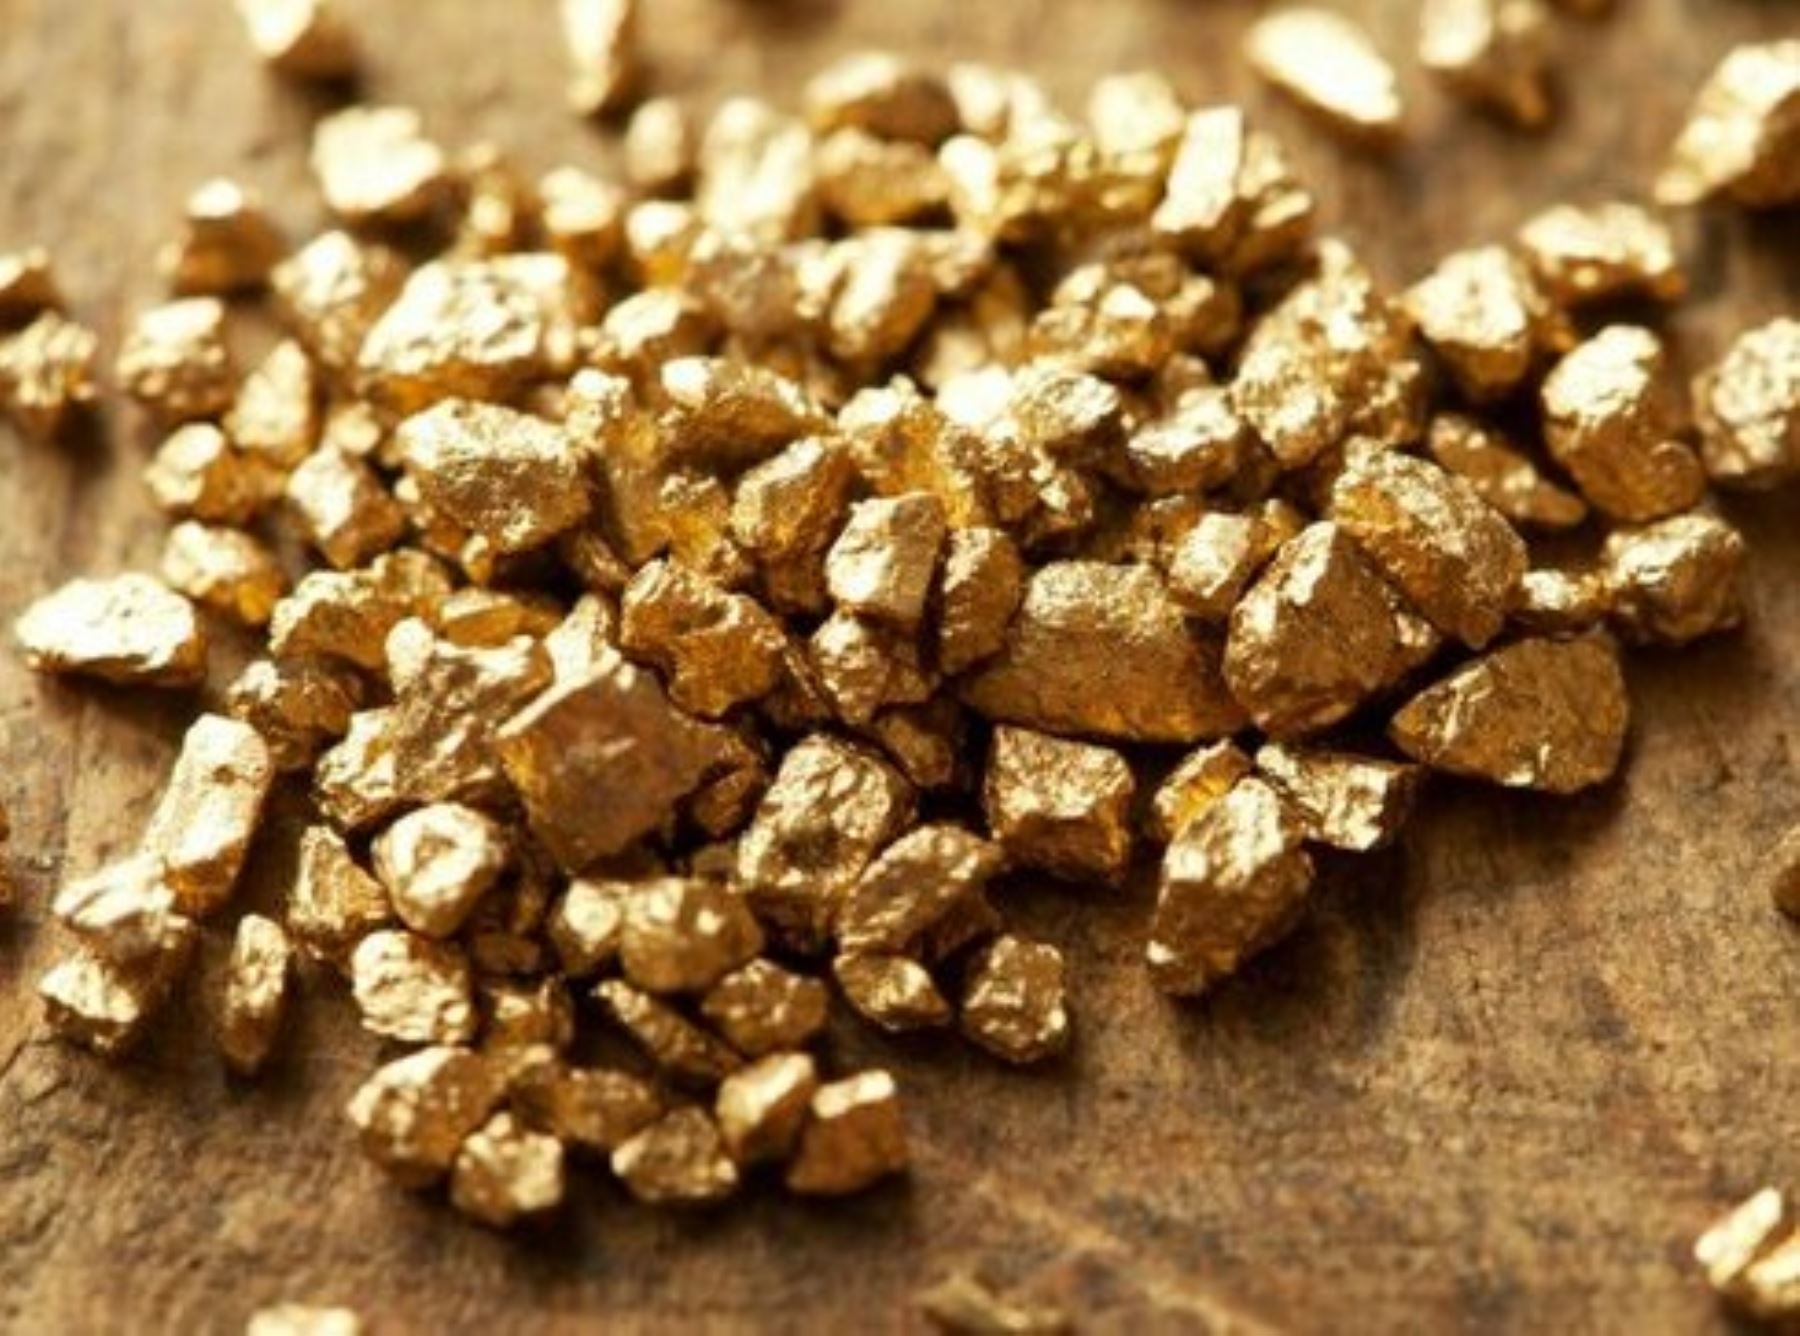 El Ministerio de Energía y Minas propuso un reglamento que regula el Registro de comercializadores y procesadores de oro y fija un plazo de 30 días hábiles para recibir aportes.